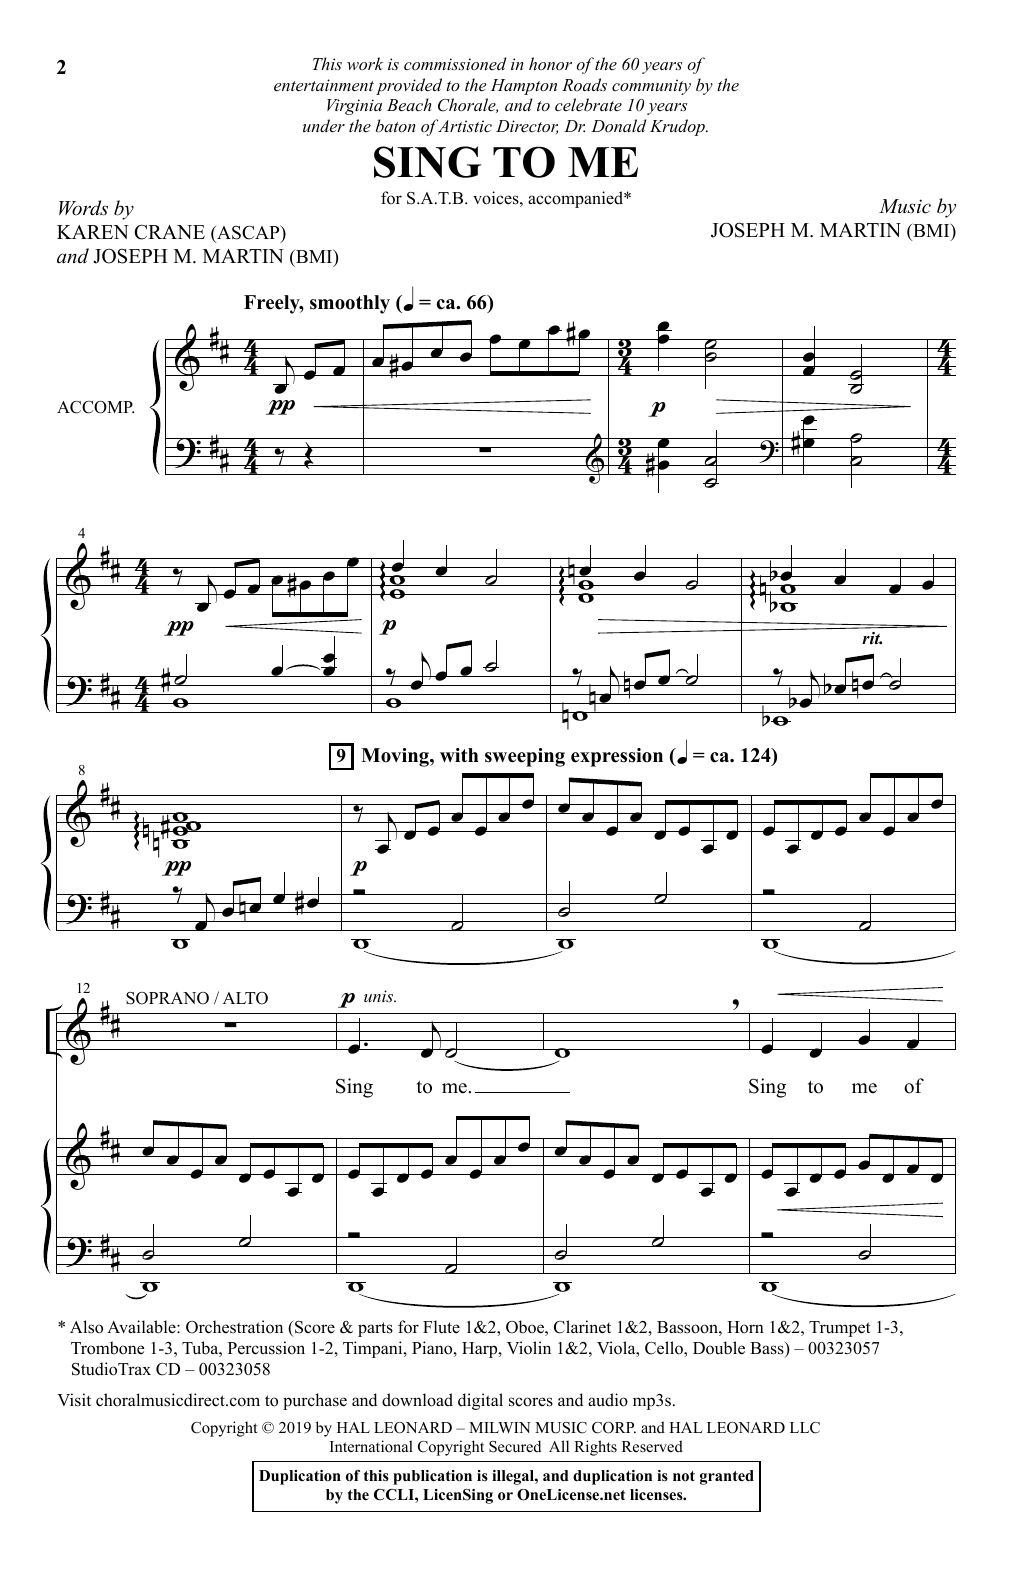 Karen Crane and Joseph M. Martin Sing To Me Sheet Music Notes & Chords for SATB Choir - Download or Print PDF